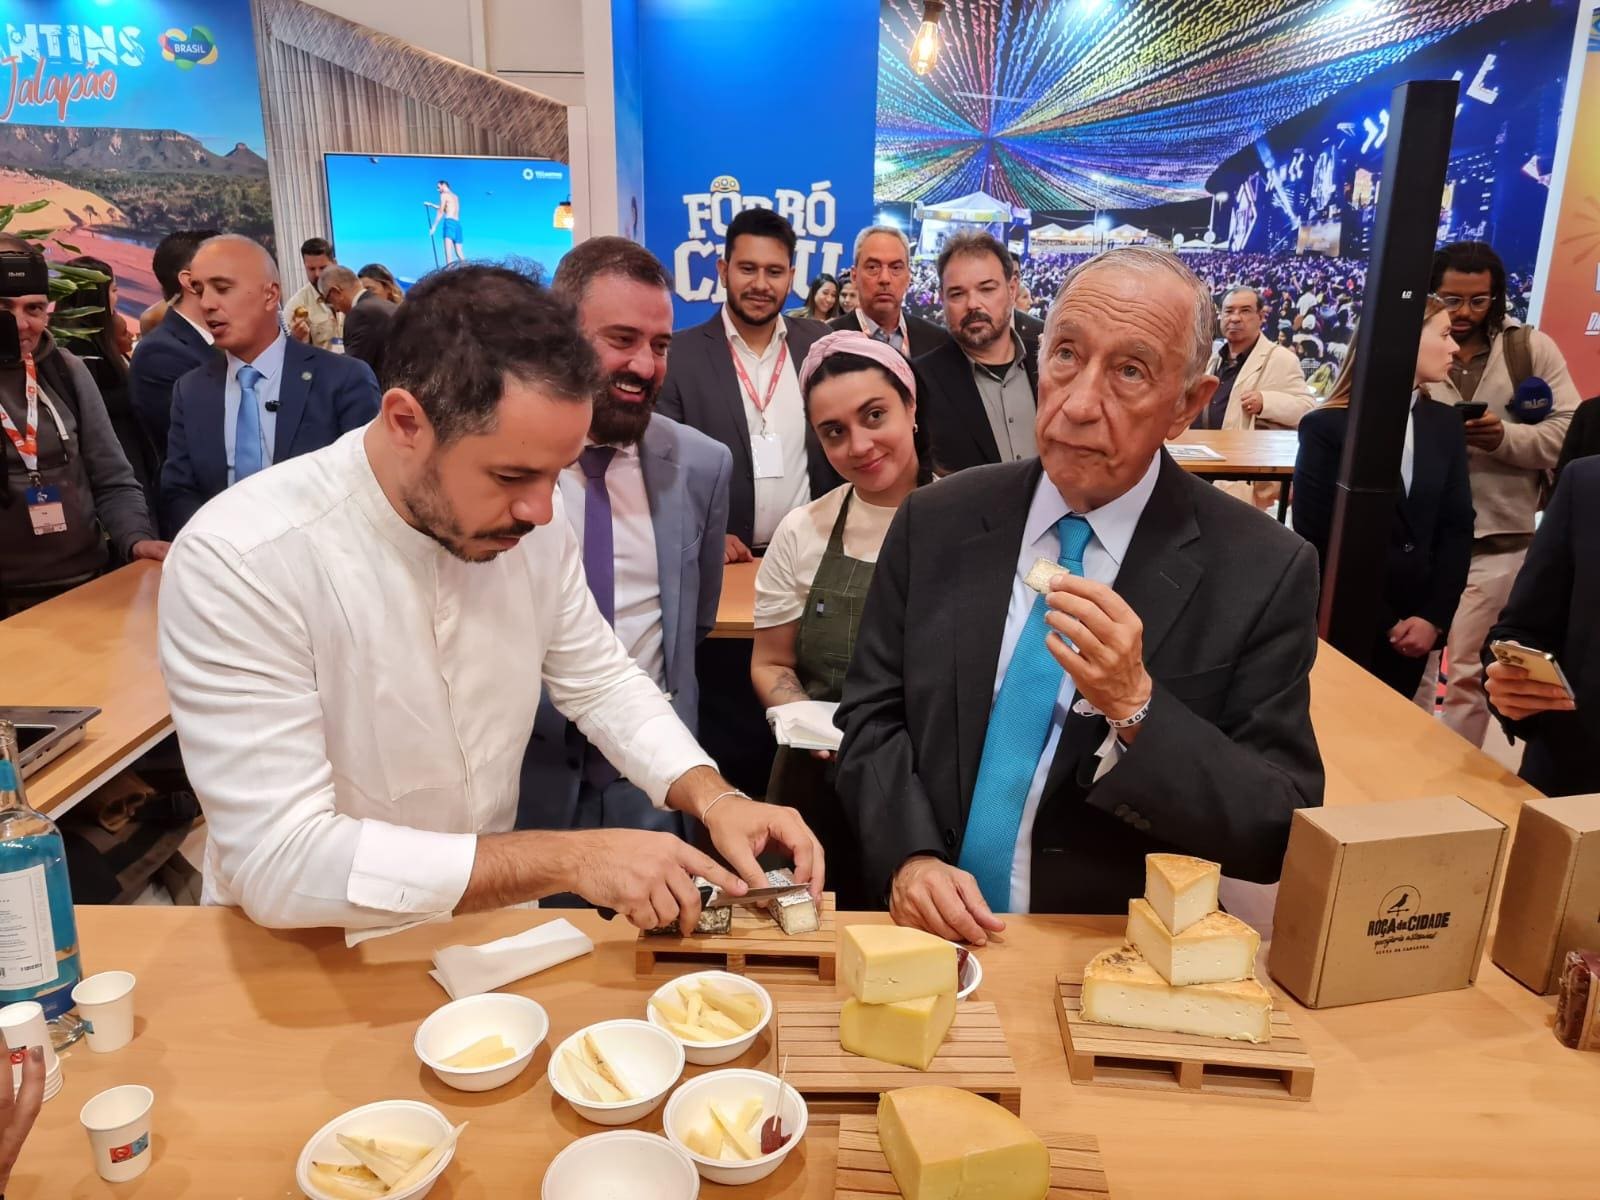 O chef Felipe Rameh serve queijos artesanais Matriarca e canastra Roça da Cidade para o presidente de Portugal, Marcelo Rebelo de Sousa